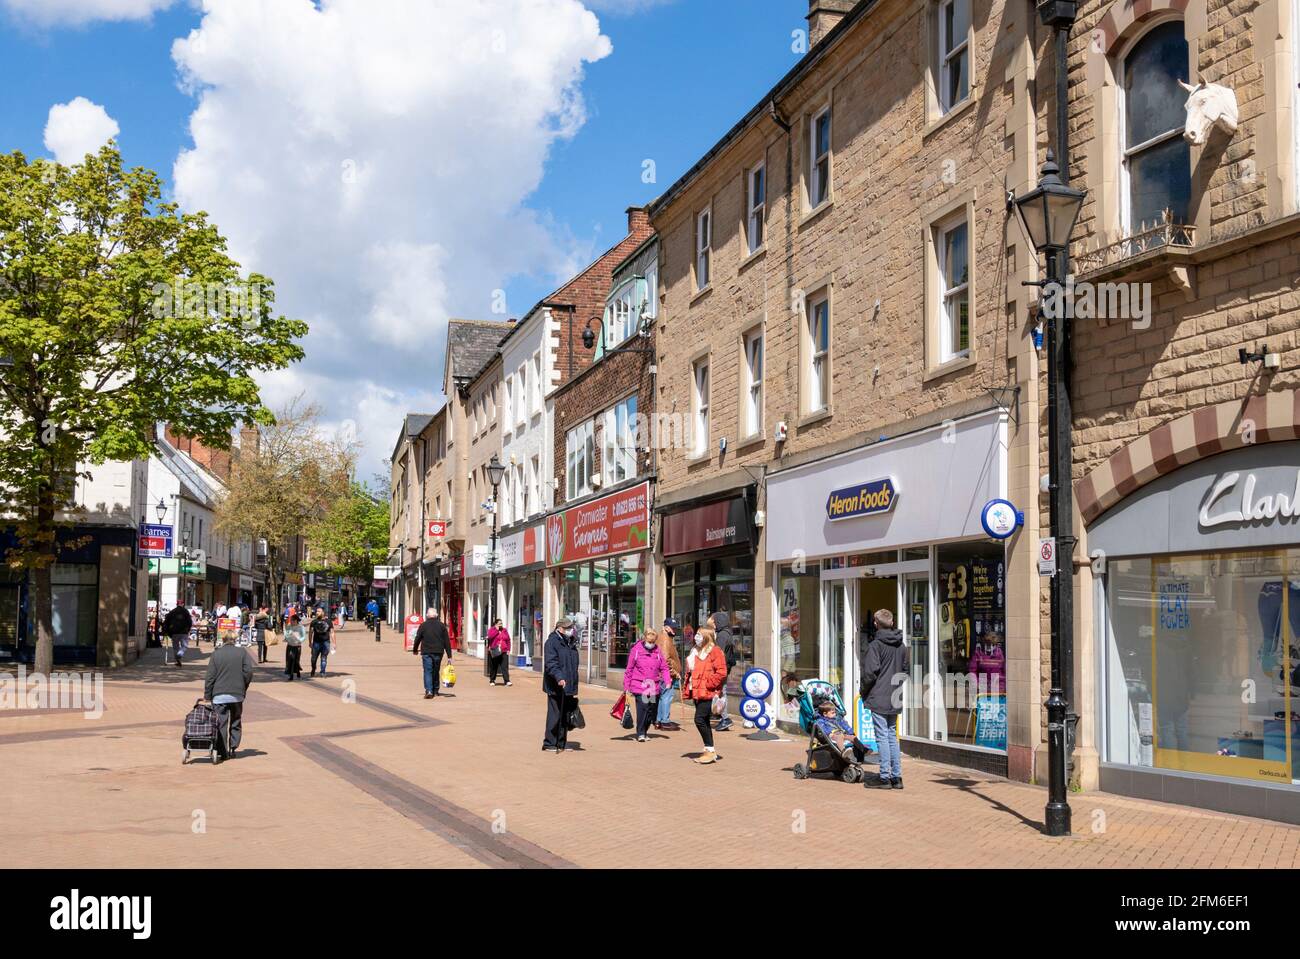 Les gens magasinent dans les boutiques de West Gate Mansfield Notinghamshire East Midlands Angleterre GB Royaume-Uni Europe Banque D'Images